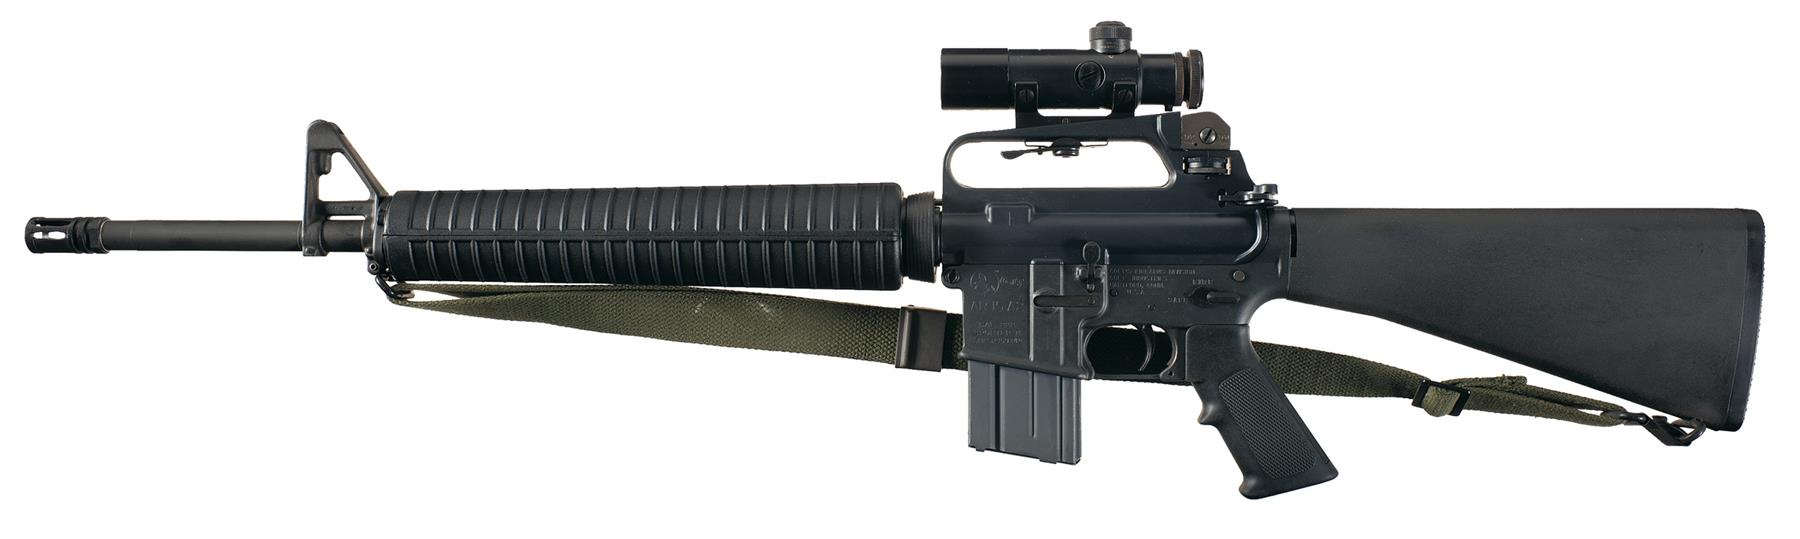 Colt AR 15a2-Rifle 222